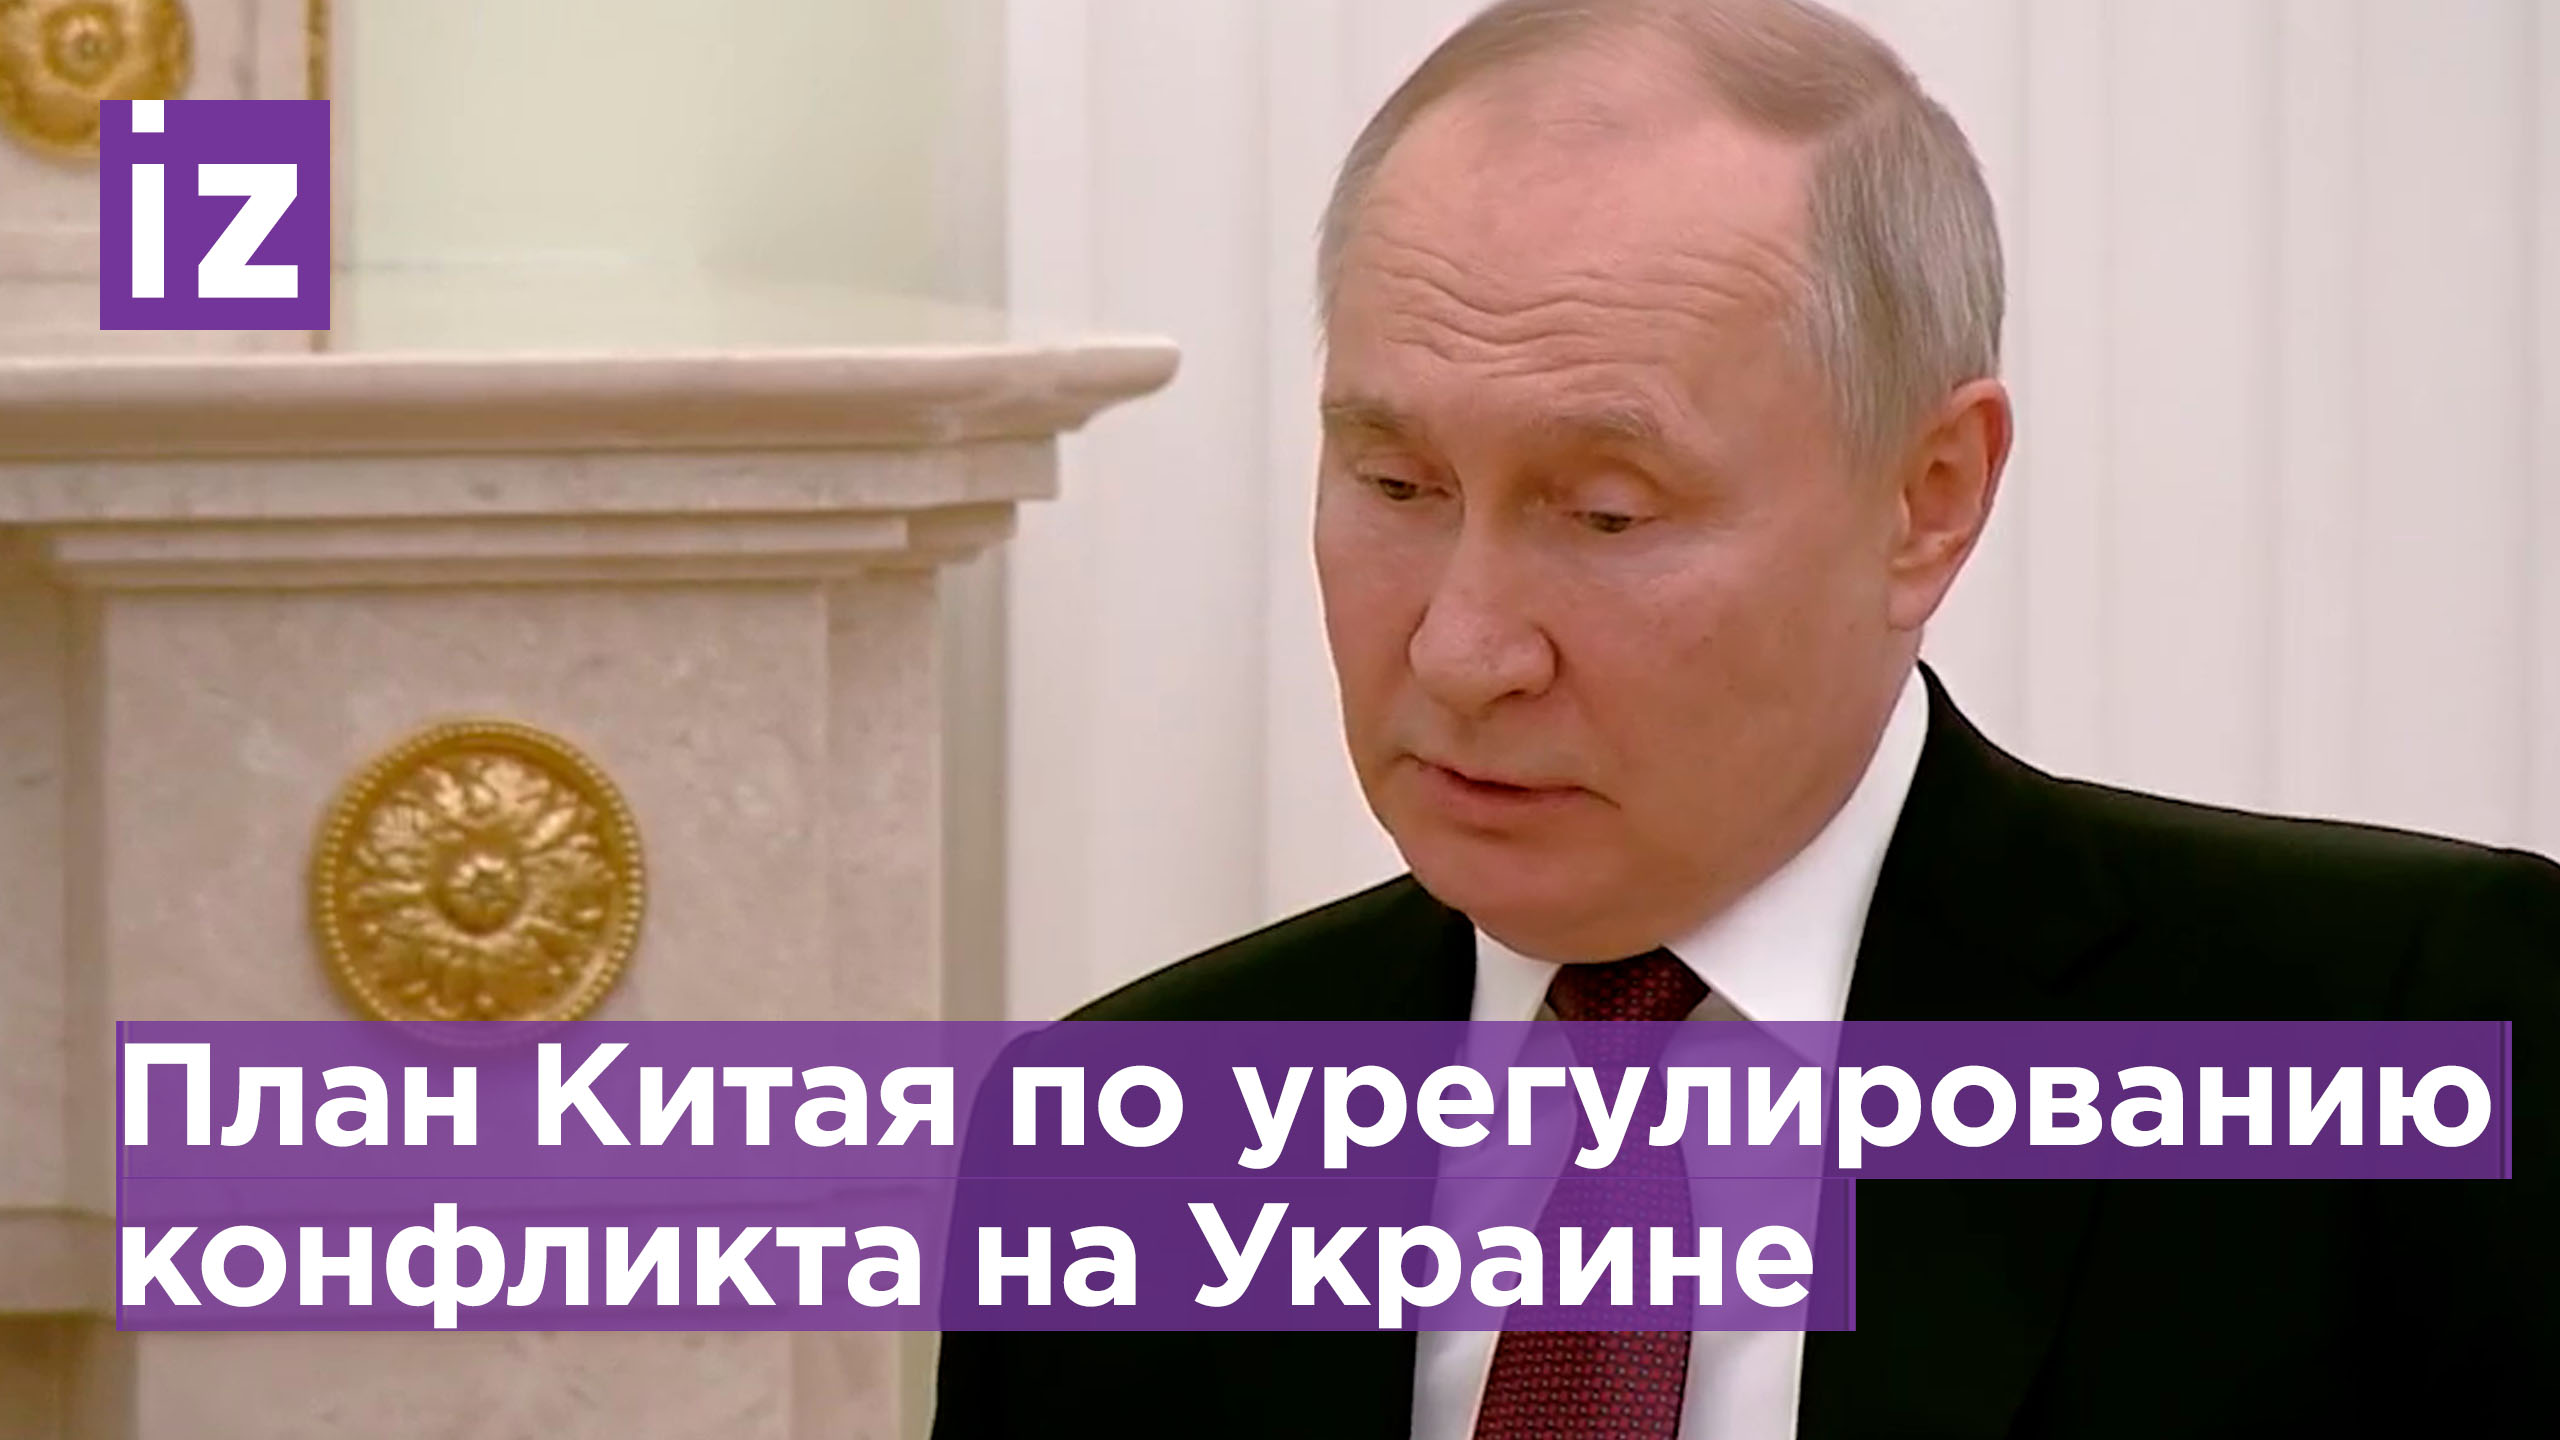 Путин ознакомился с планом Китая по урегулированию конфликта на Украине / Извести